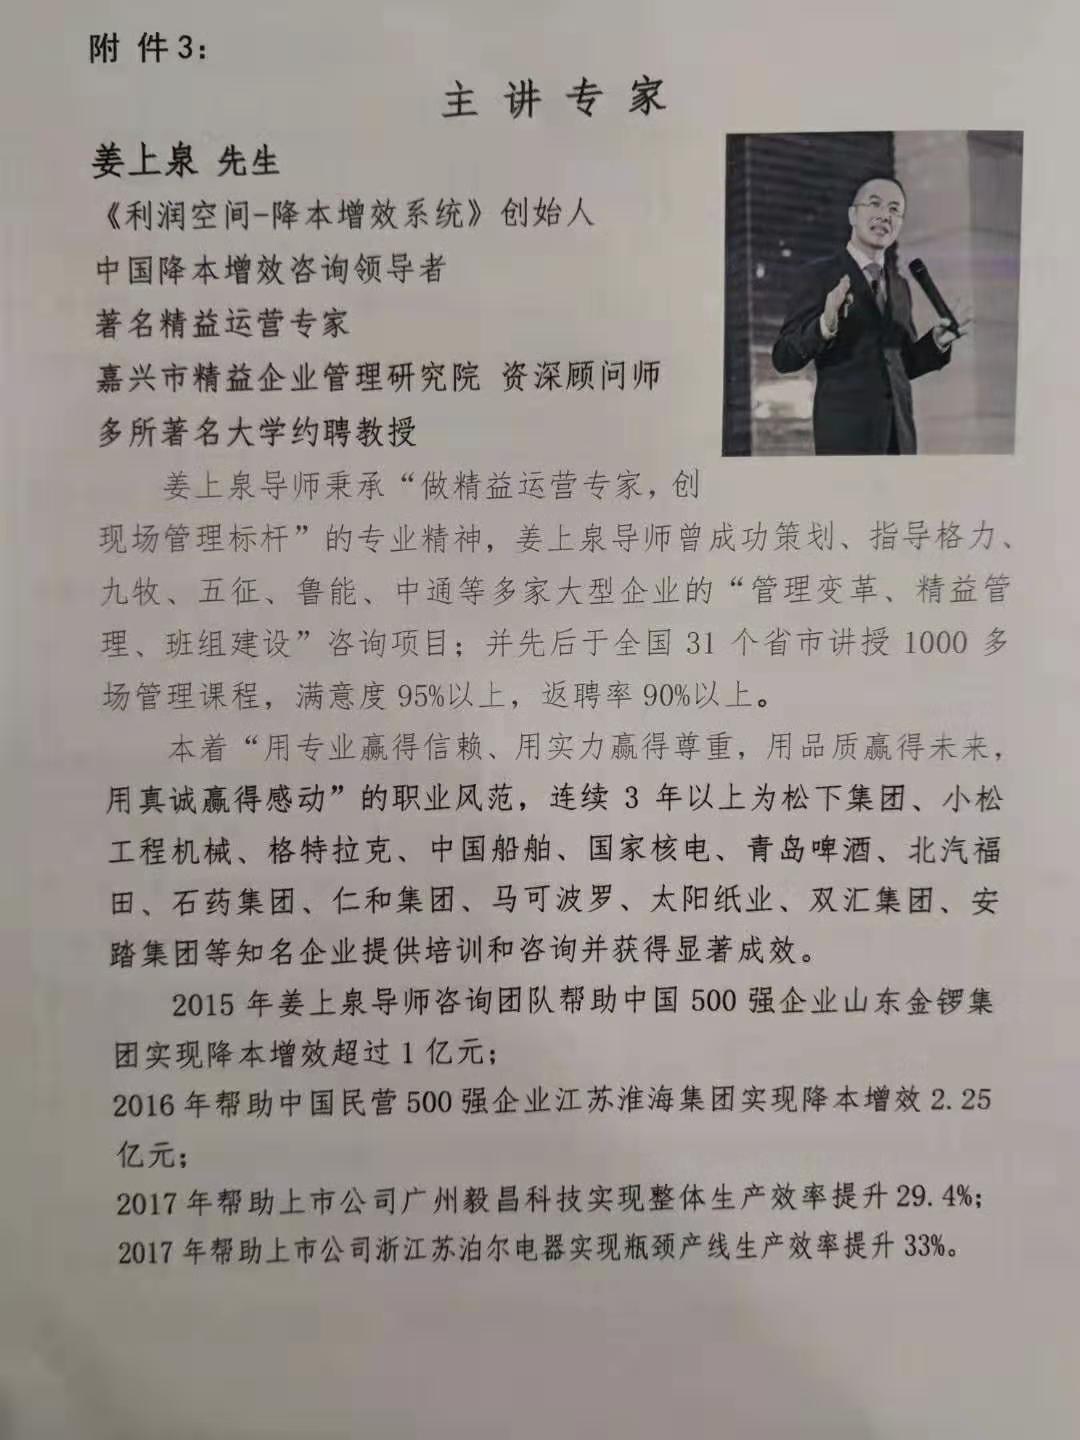 浙江精益管理资讯集团